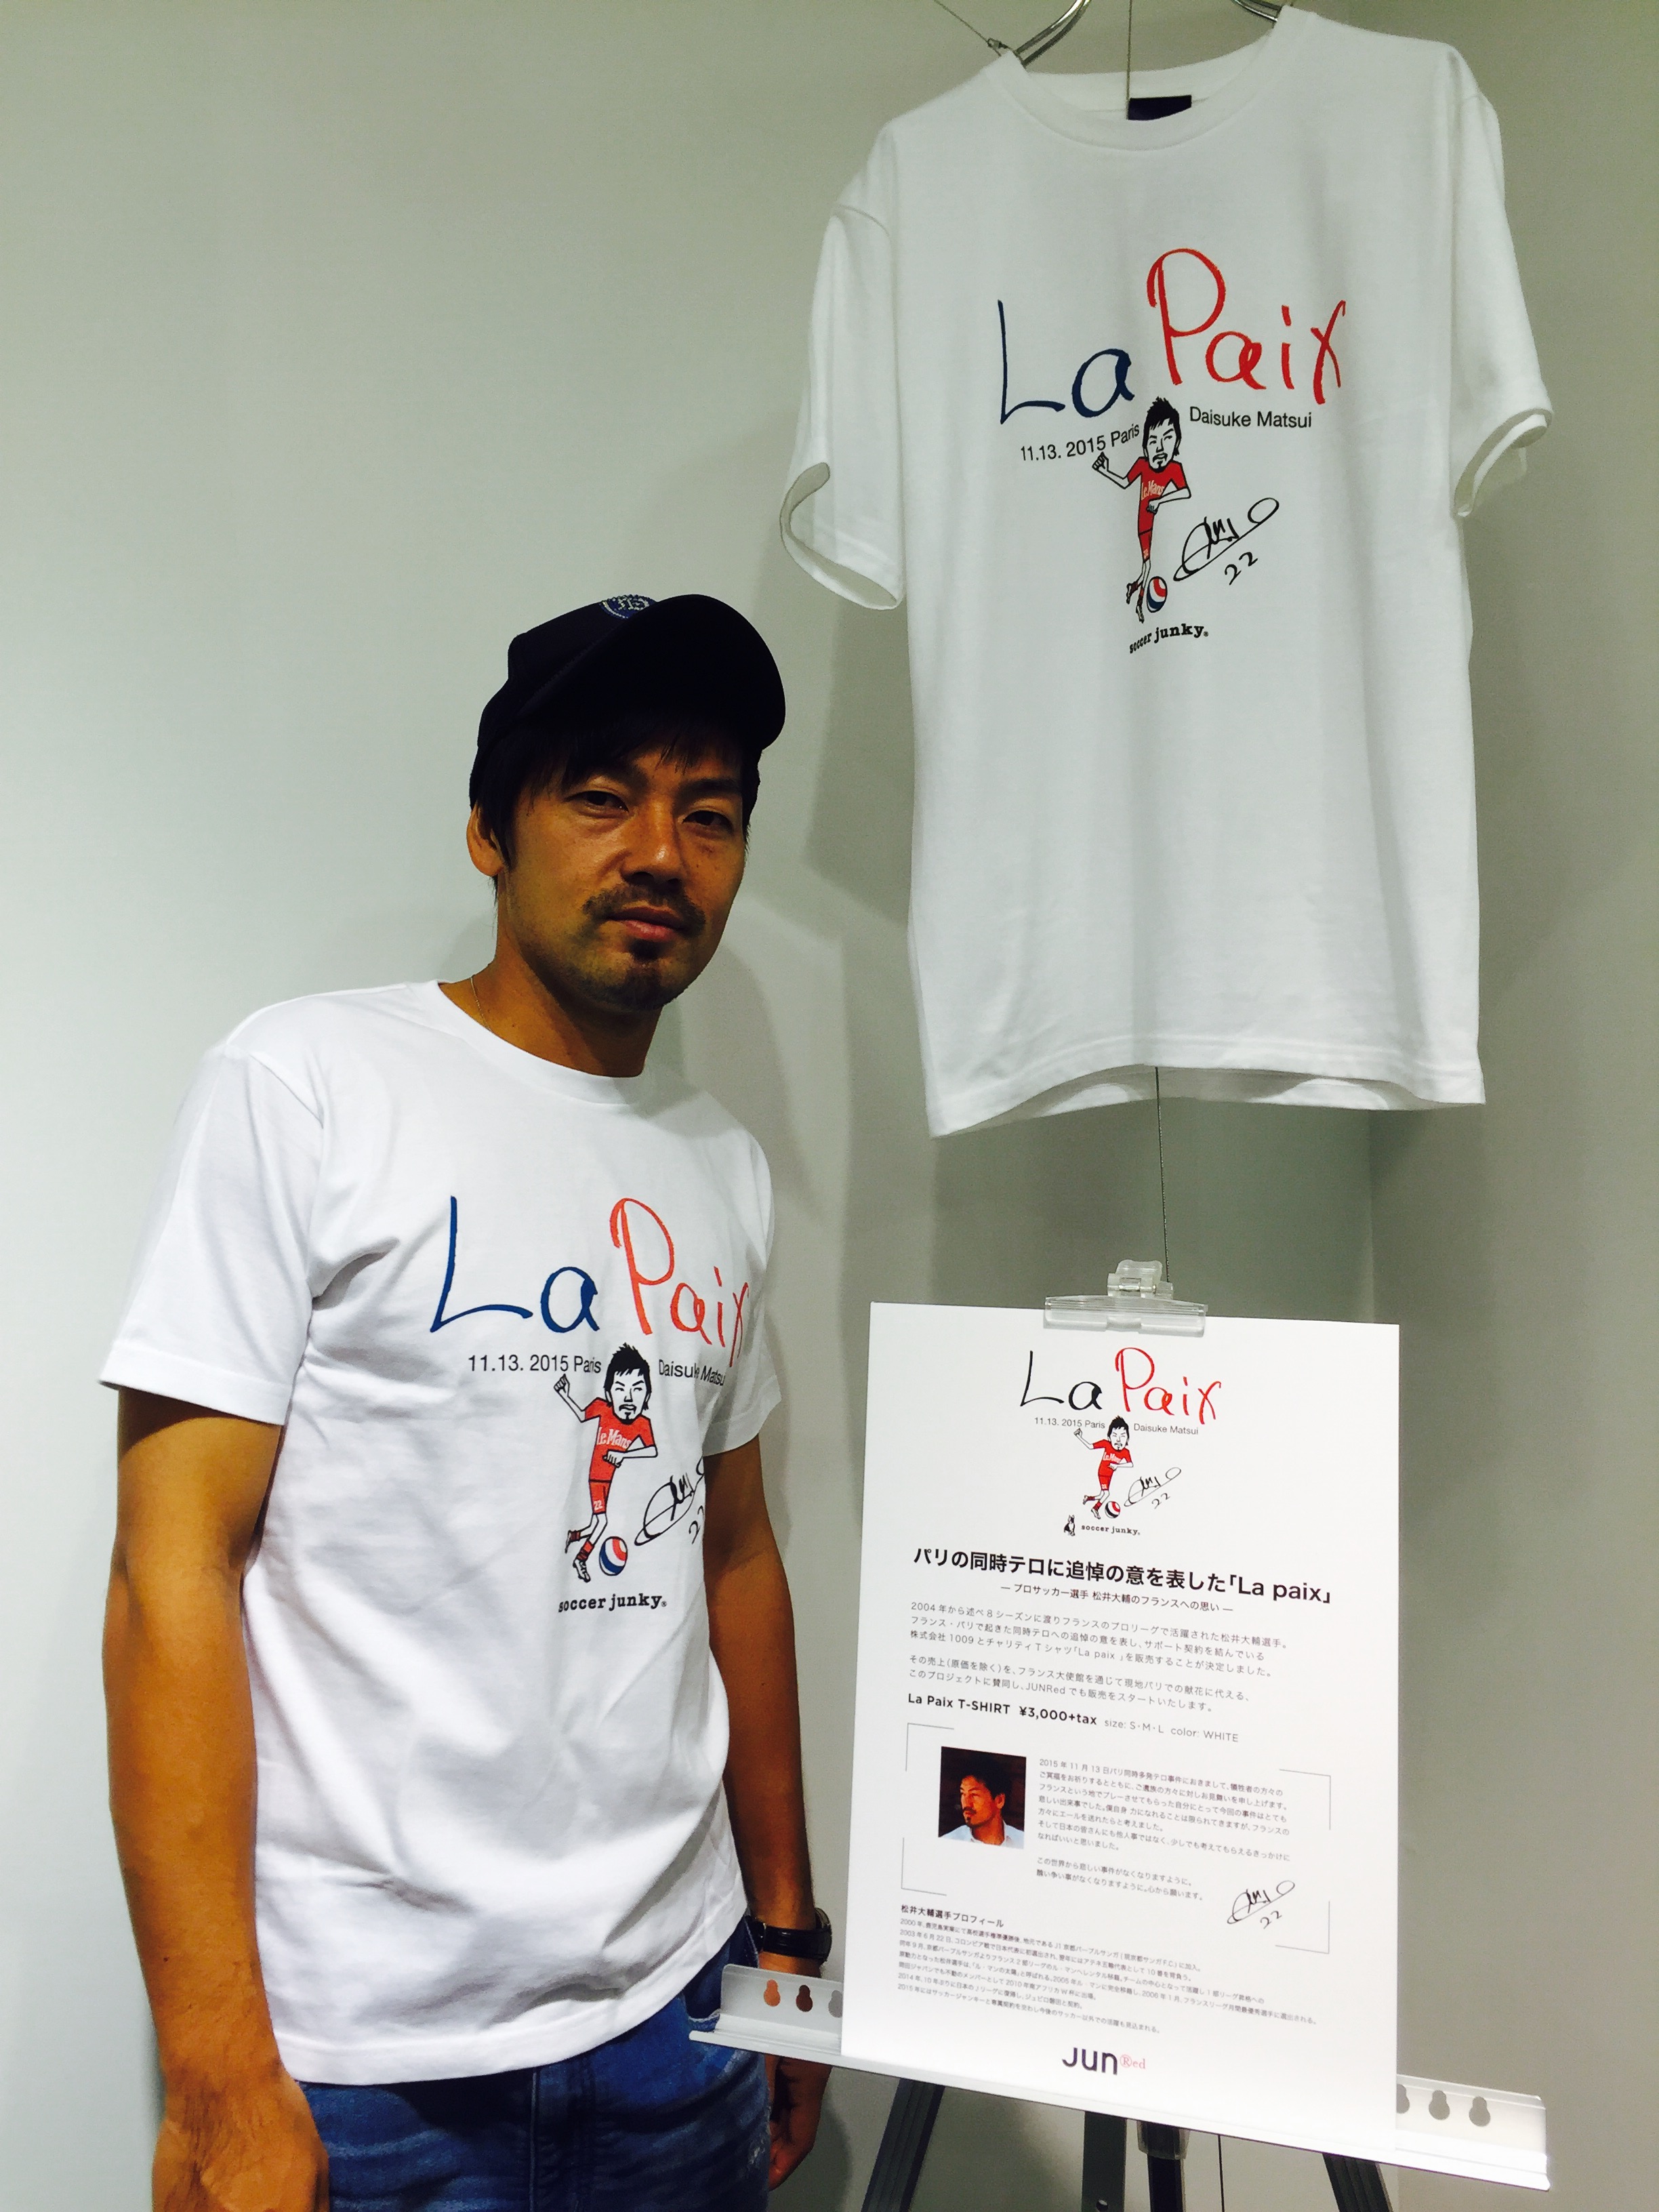 元日本代表の松井が仏テロ事件へ哀悼の意 チャリティーtシャツを販売 フットボールゾーン